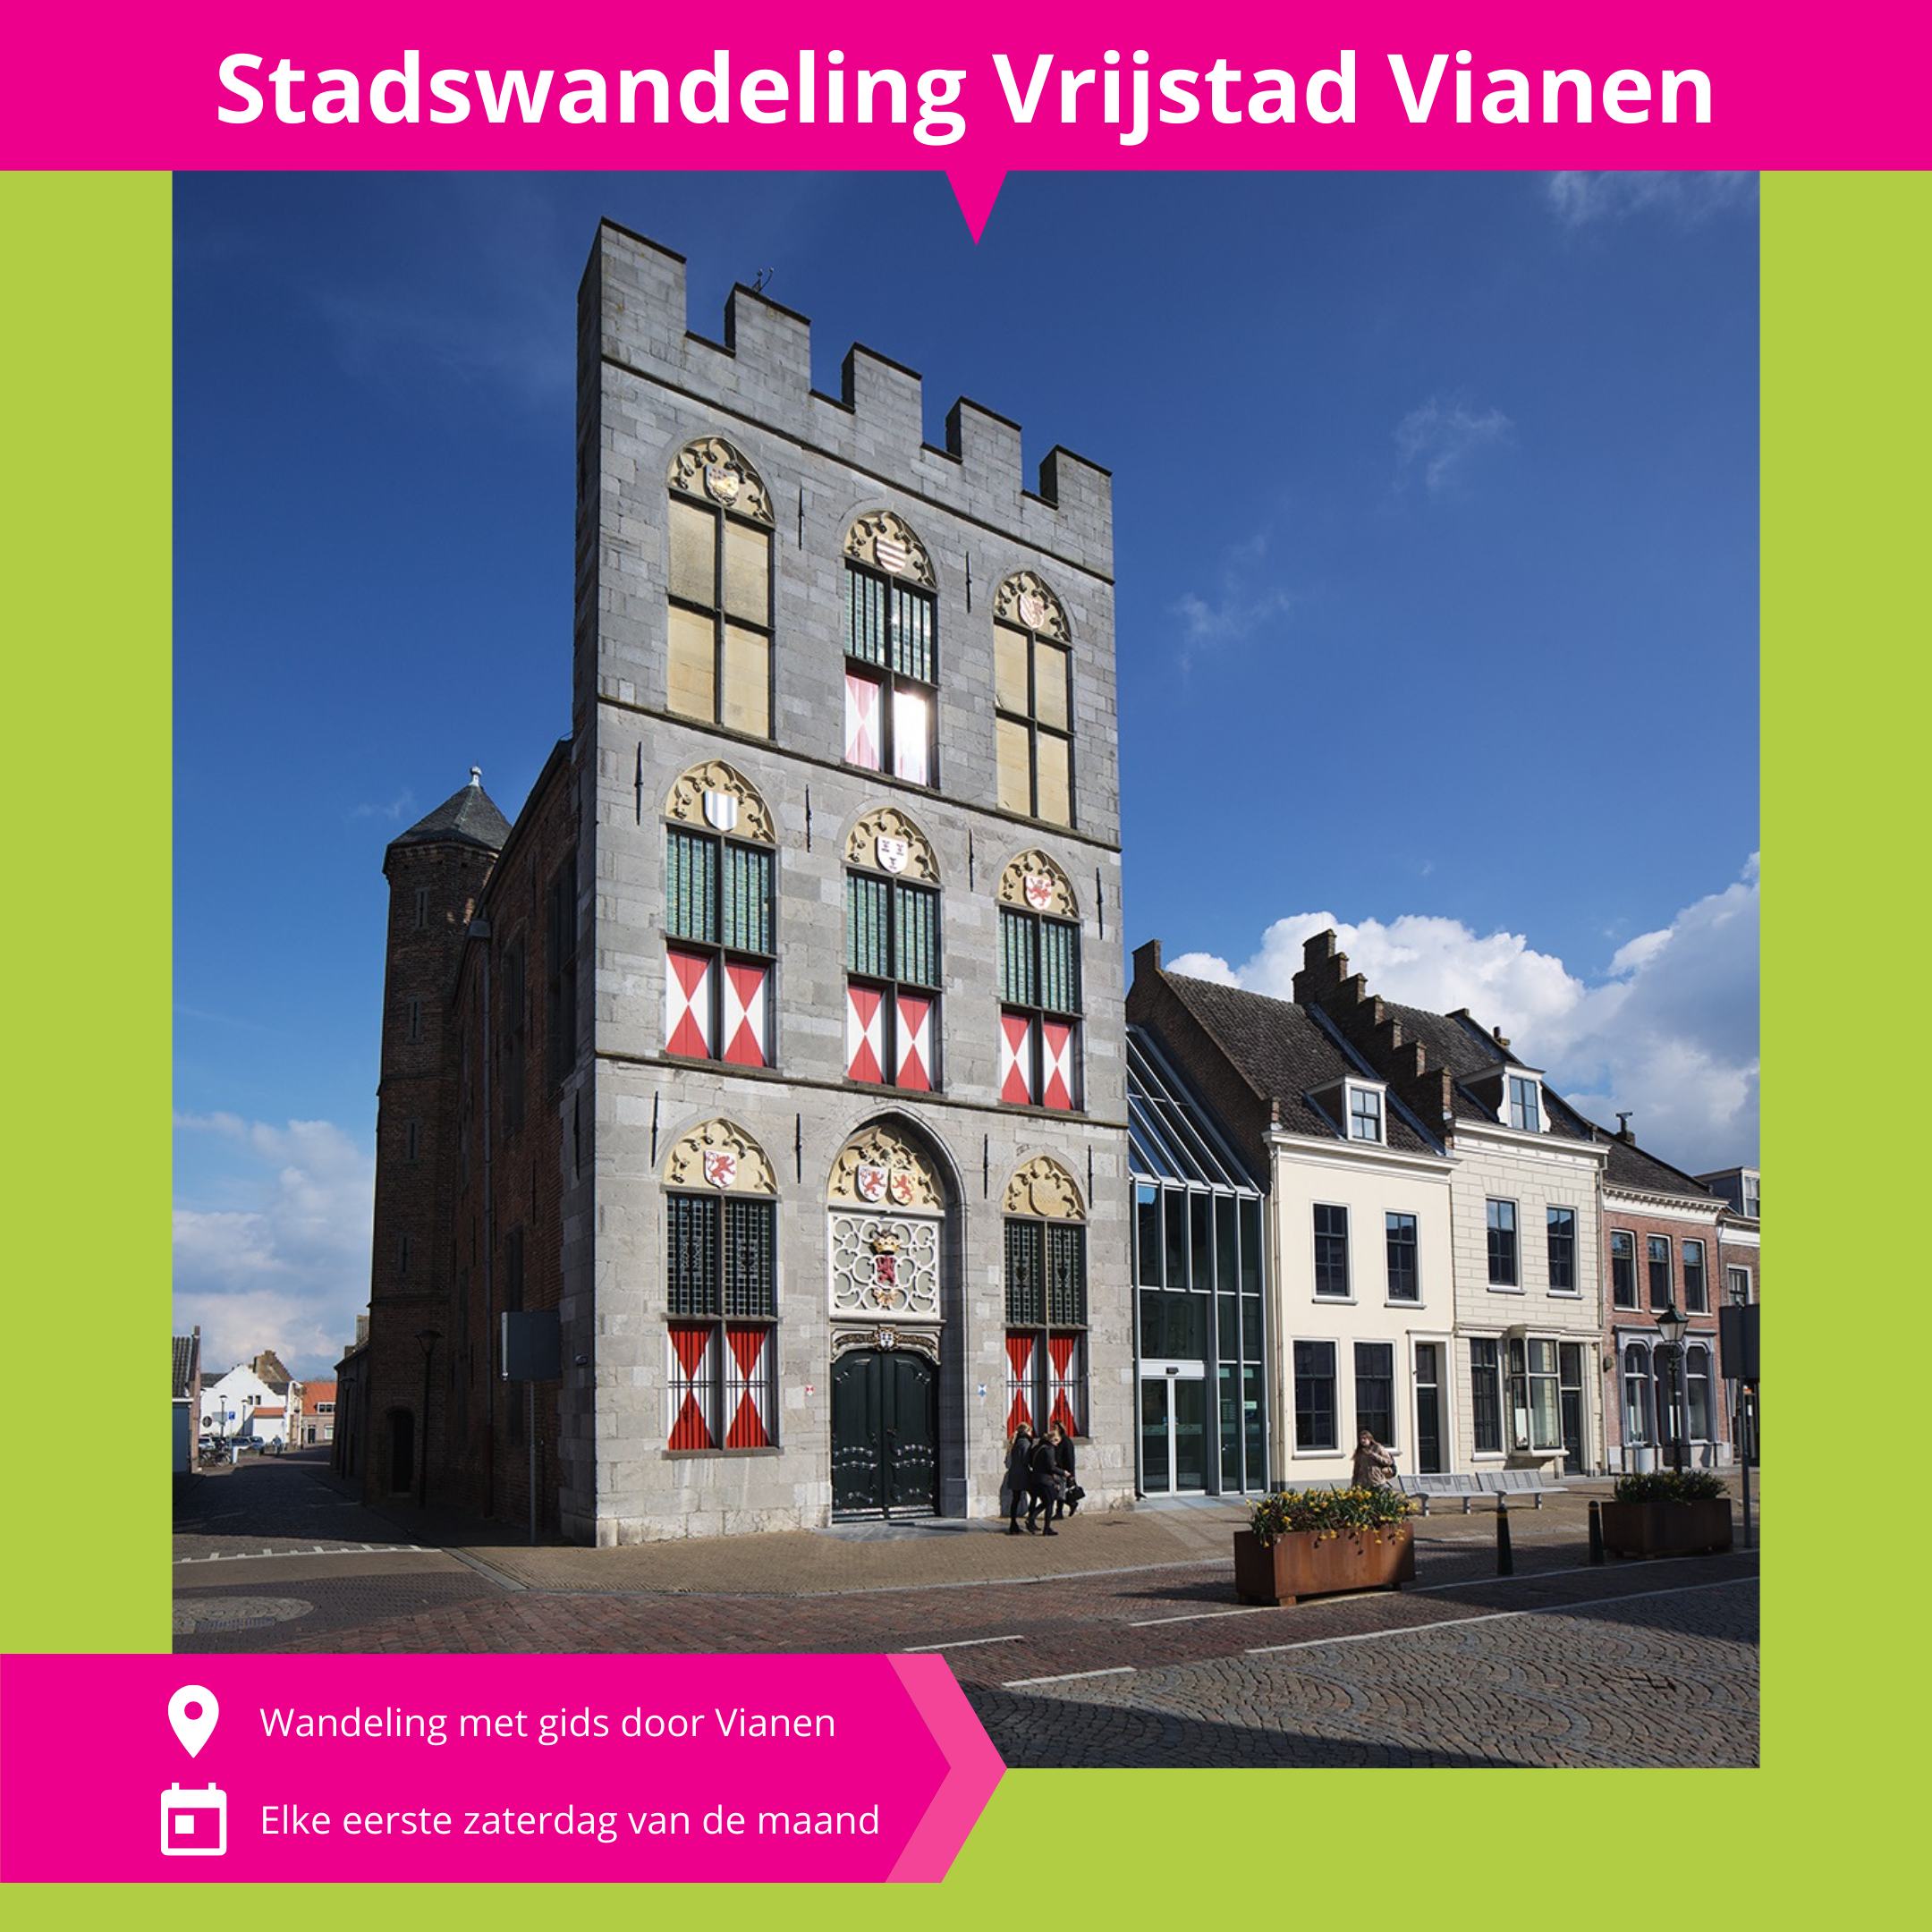 De_Vrijetijdkrant_regio_Utrecht_Stadswandeling_door_Vrijstad_Vianen_INSTA